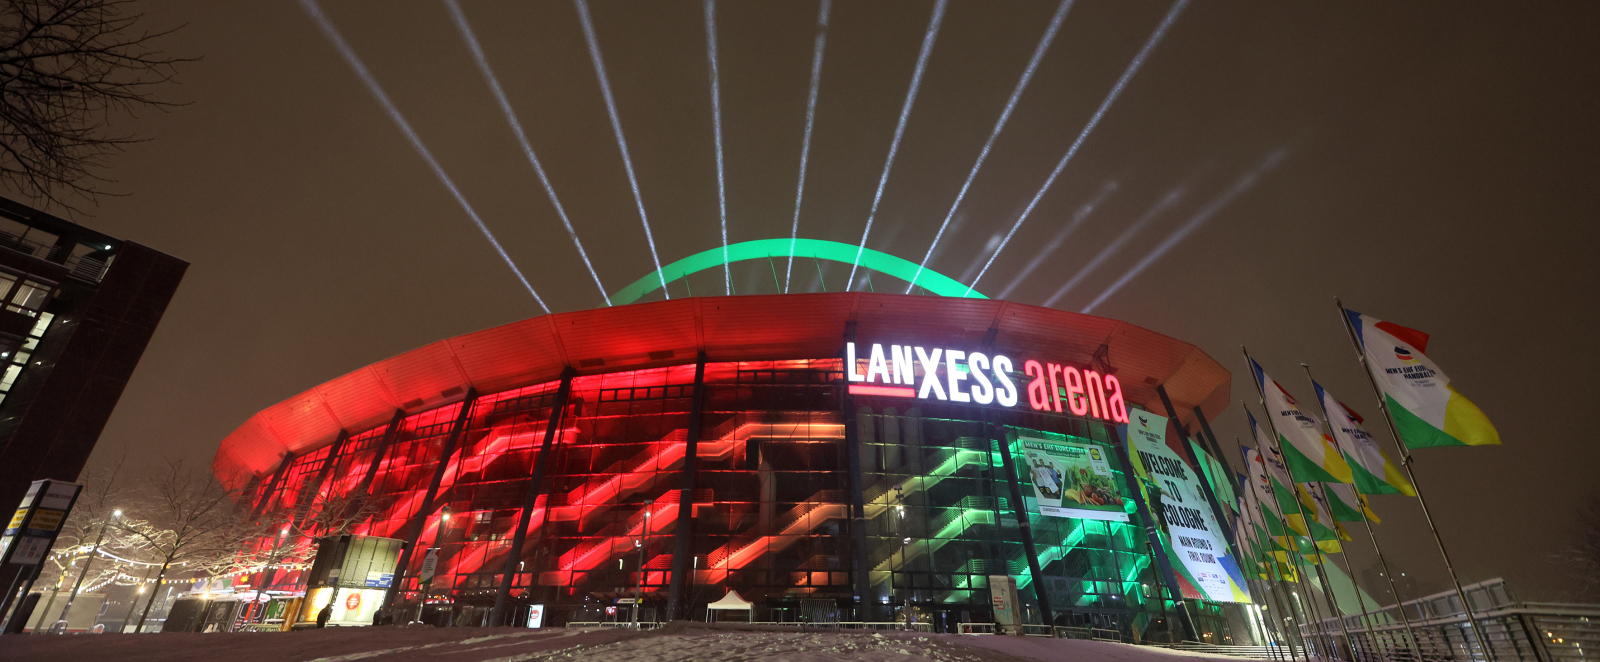 Illuminierte Lanxess arena in Köln